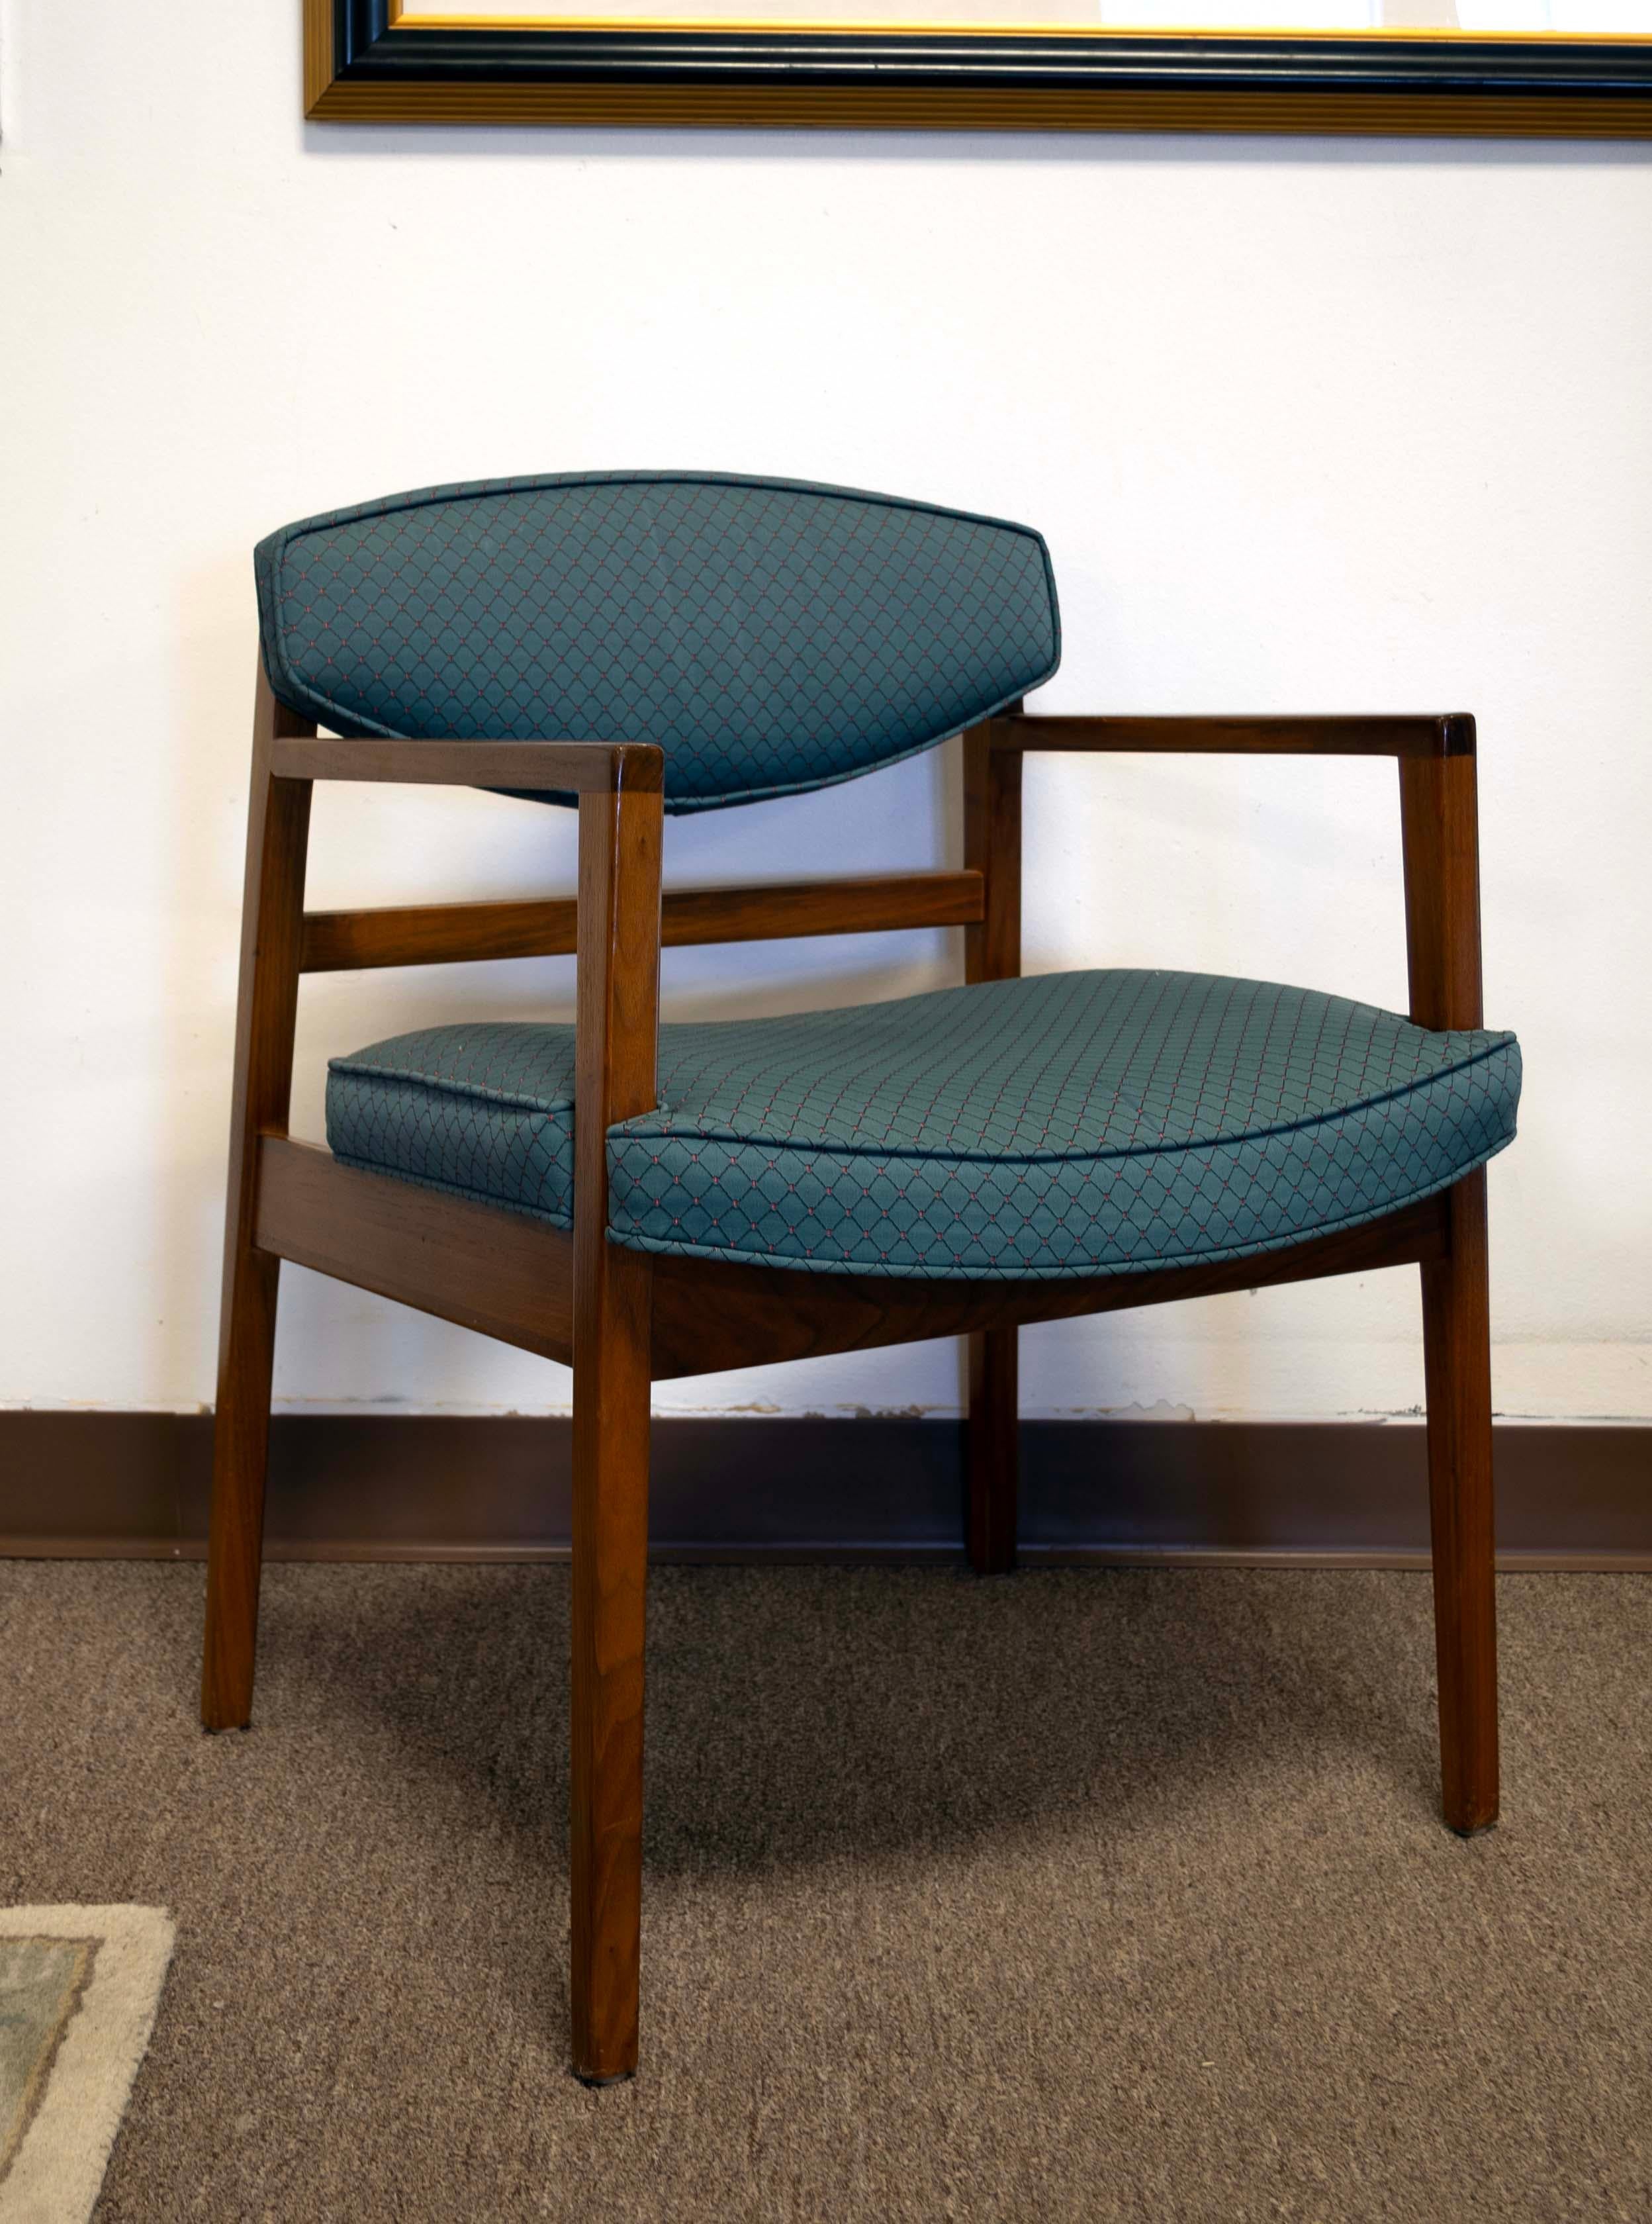 Dieses elegante und raffinierte Set aus sechs Stühlen von George Nelson für Herman Miller besteht aus zwei Kapitäns- und vier Beistellstühlen, die alle das klassische Design der Jahrhundertmitte verkörpern. Die warmen Walnussholzrahmen werden durch